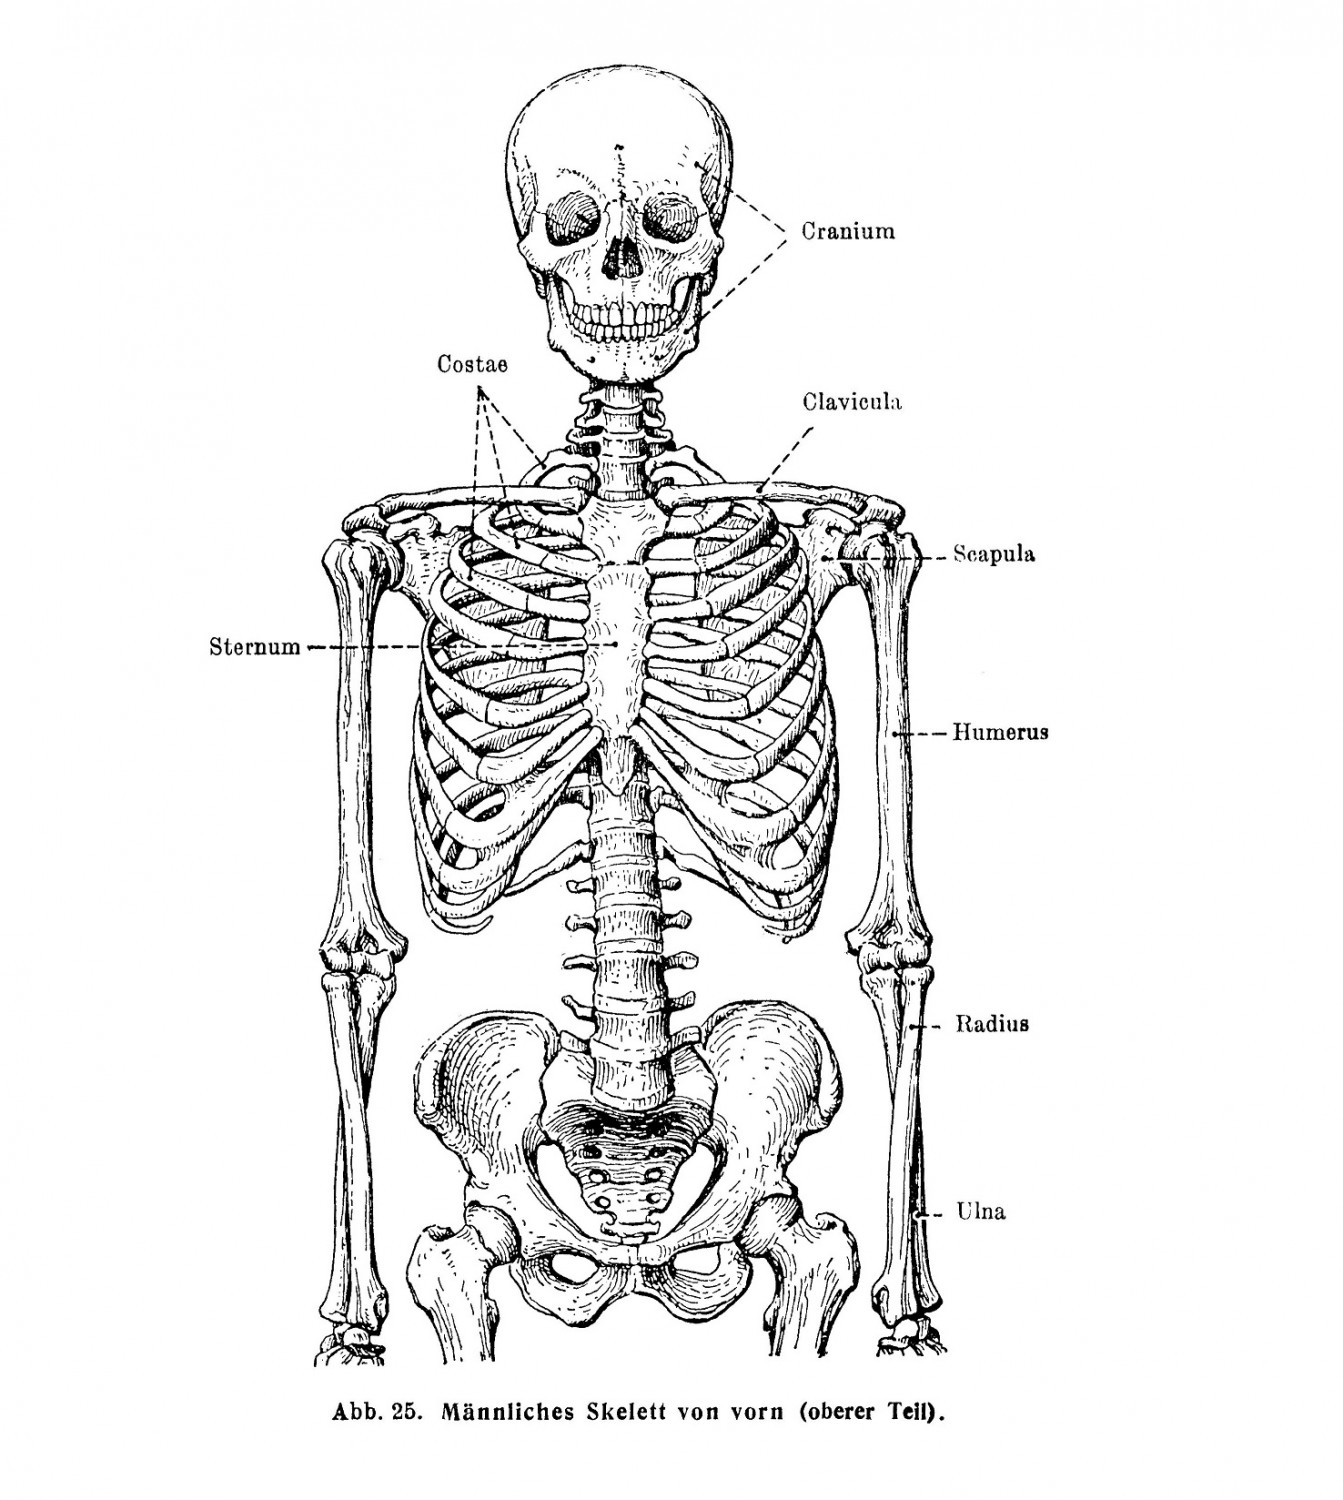 Männlicher skelett von vorn